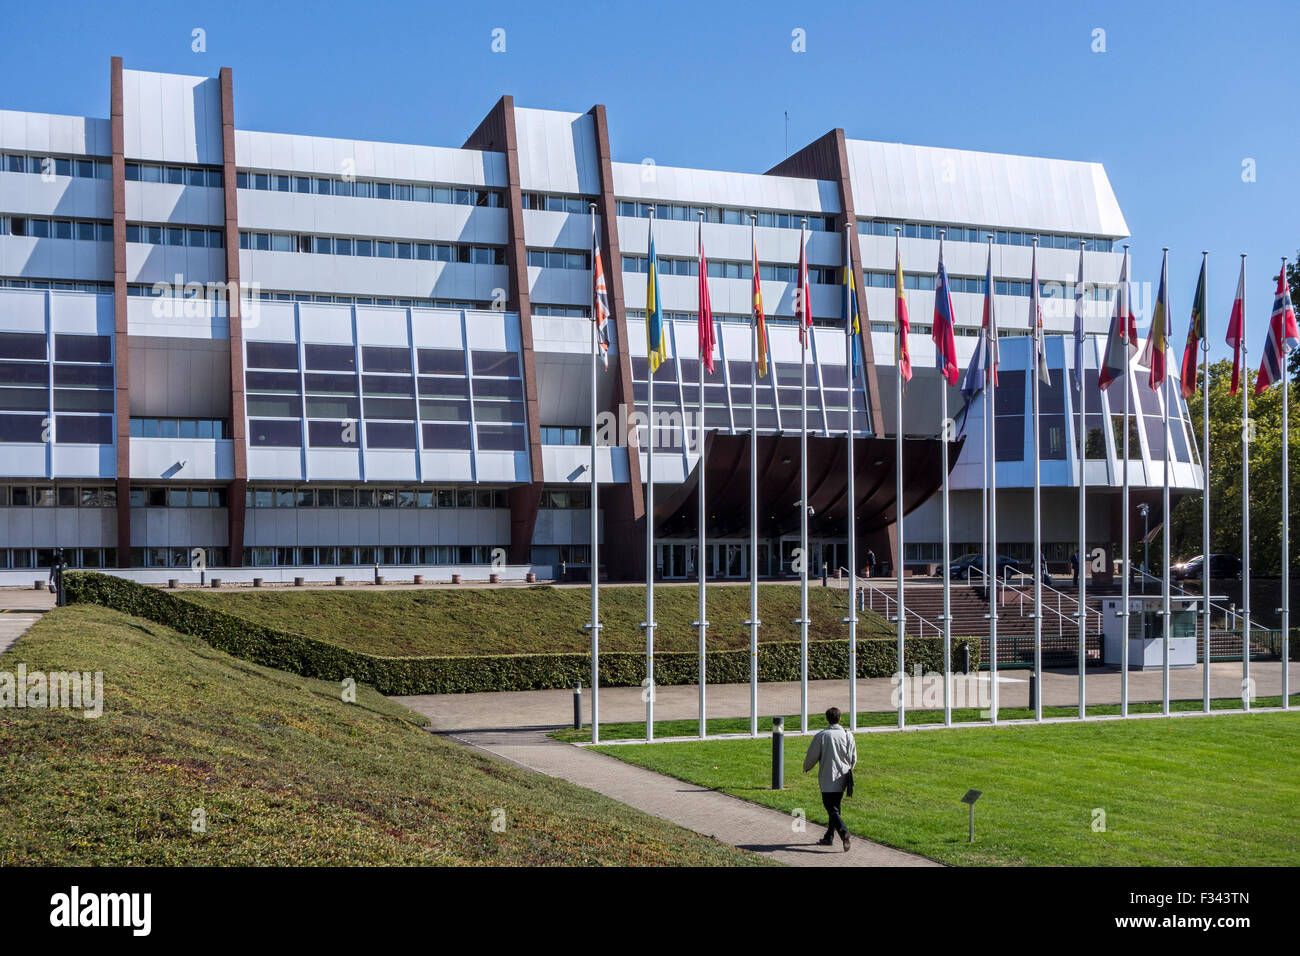 Siège du Conseil de l'Europe / Europe / Conseil de l'Europe au Palais de l'Europe à Strasbourg, France Banque D'Images